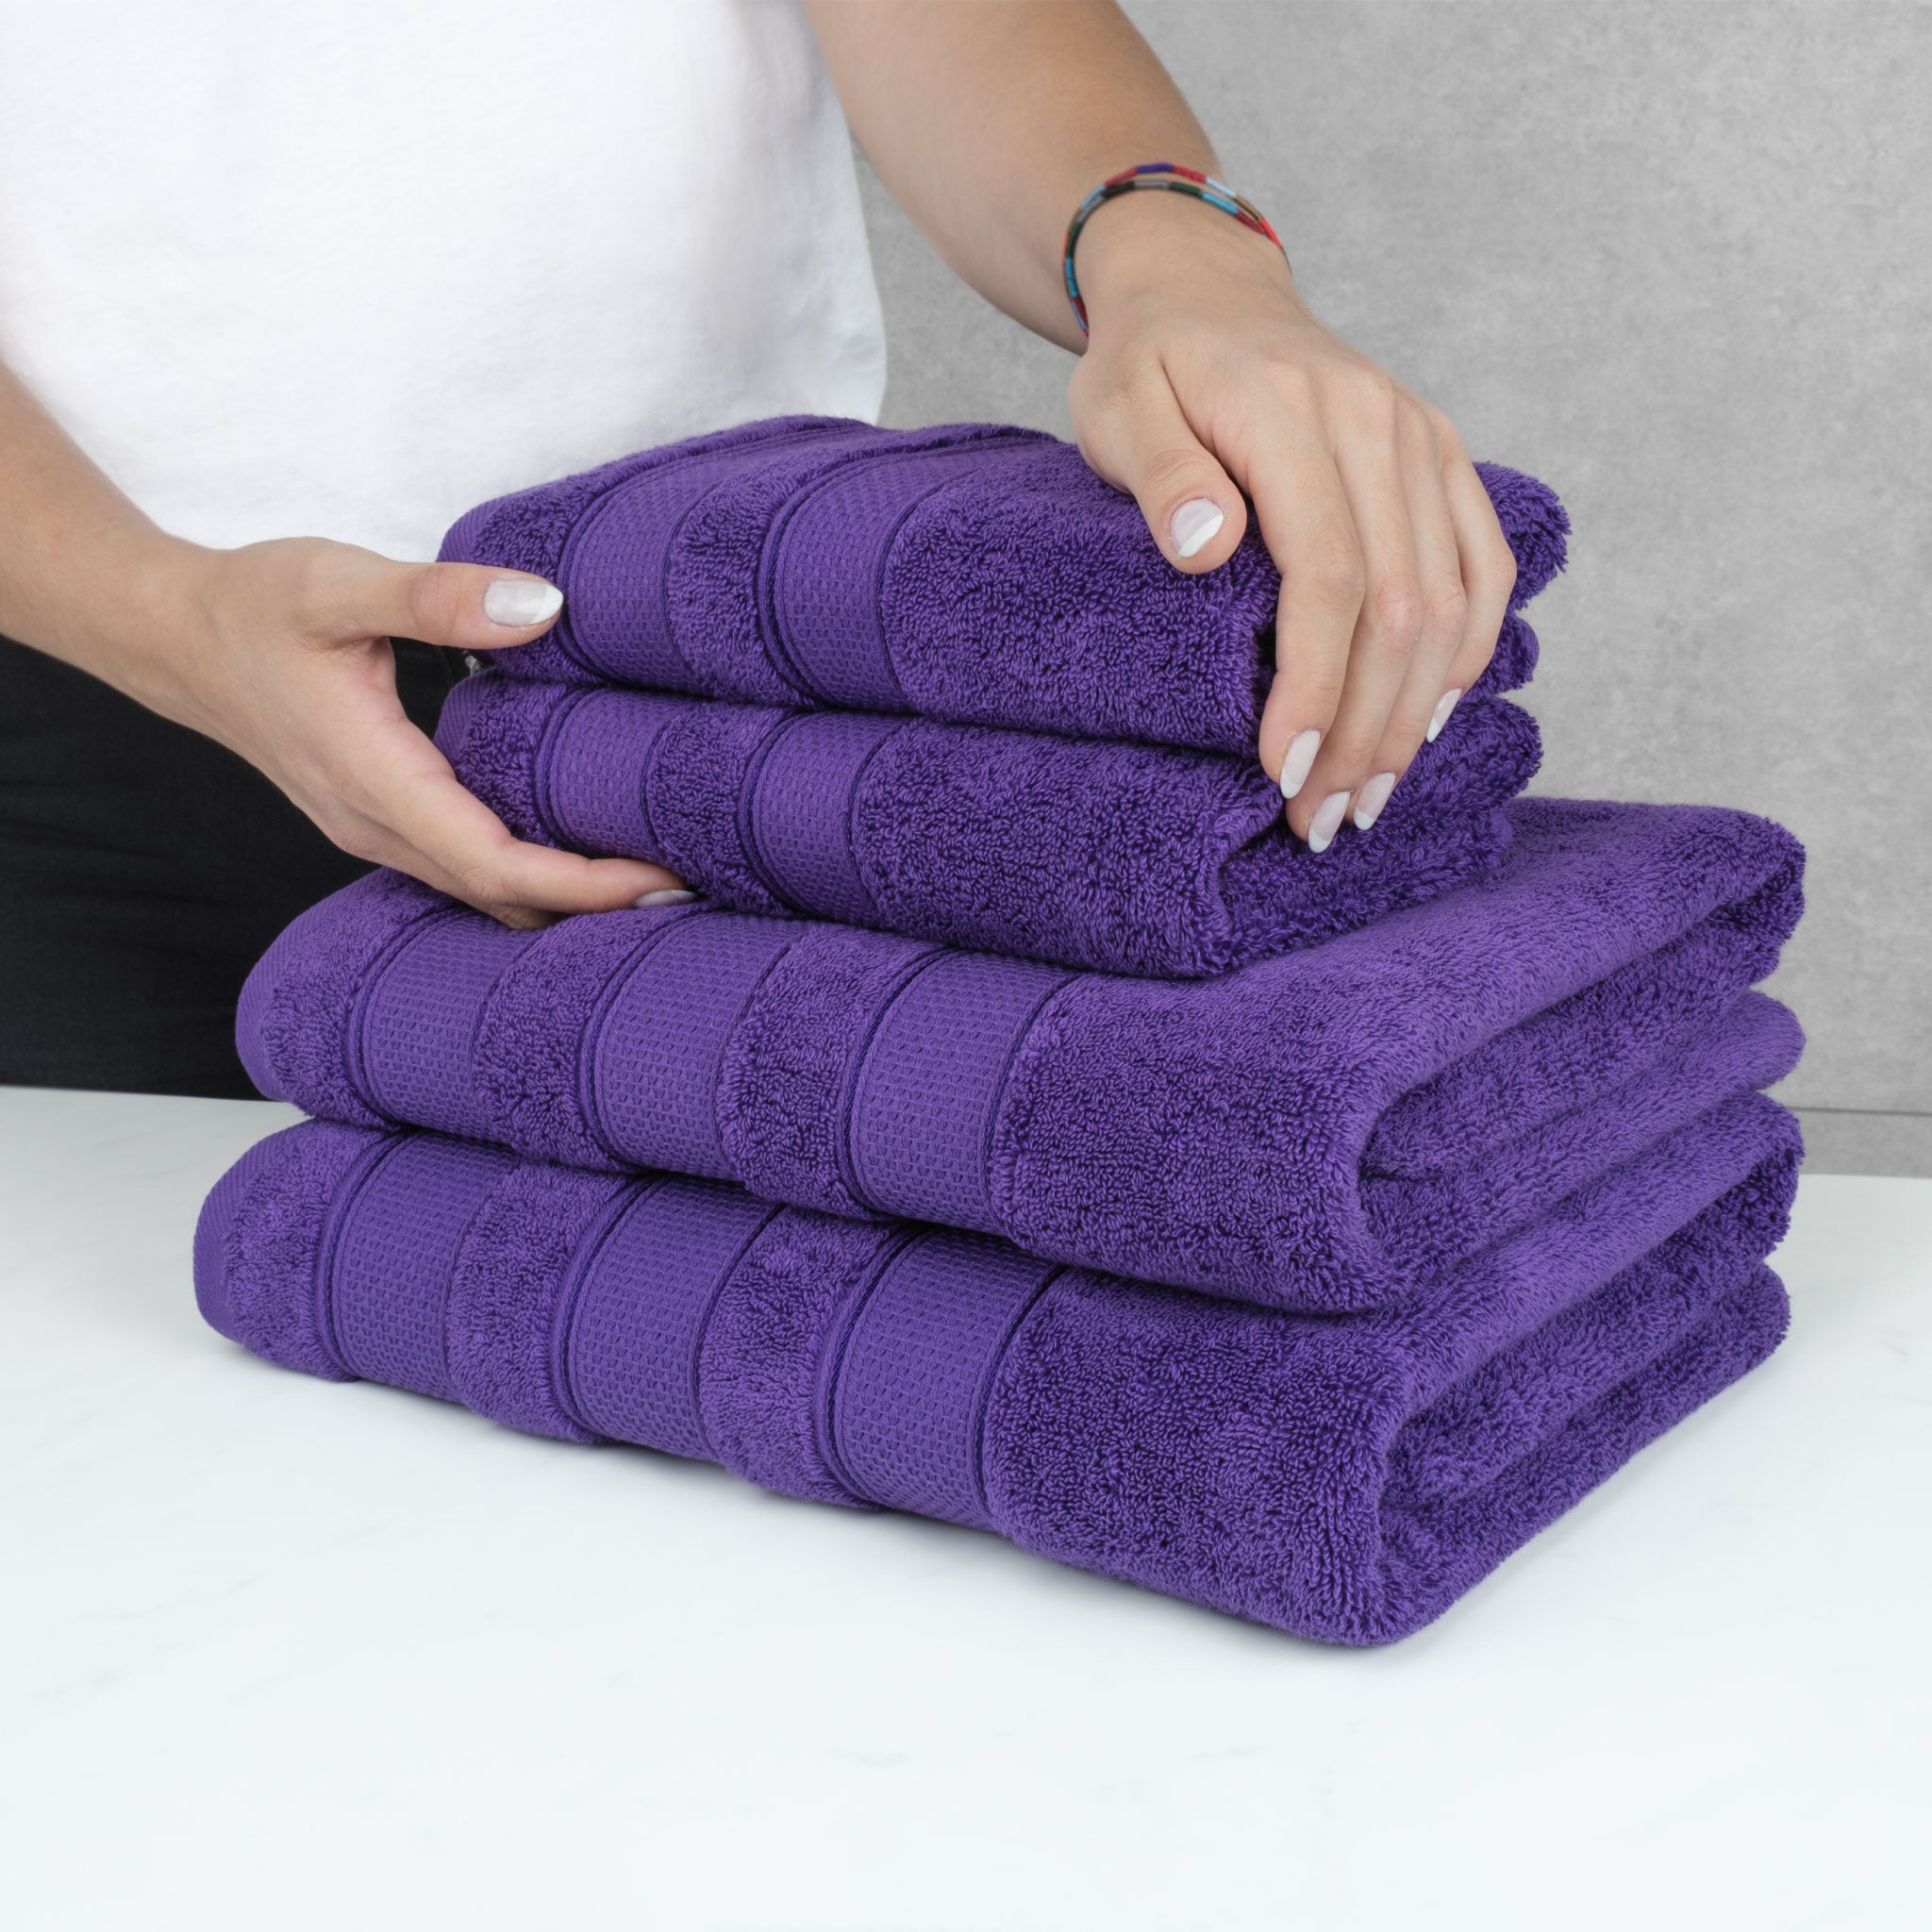 Salem 6 Piece 100% Turkish Combed Cotton Luxury Bath Towel Set-10 Set Case  Pack